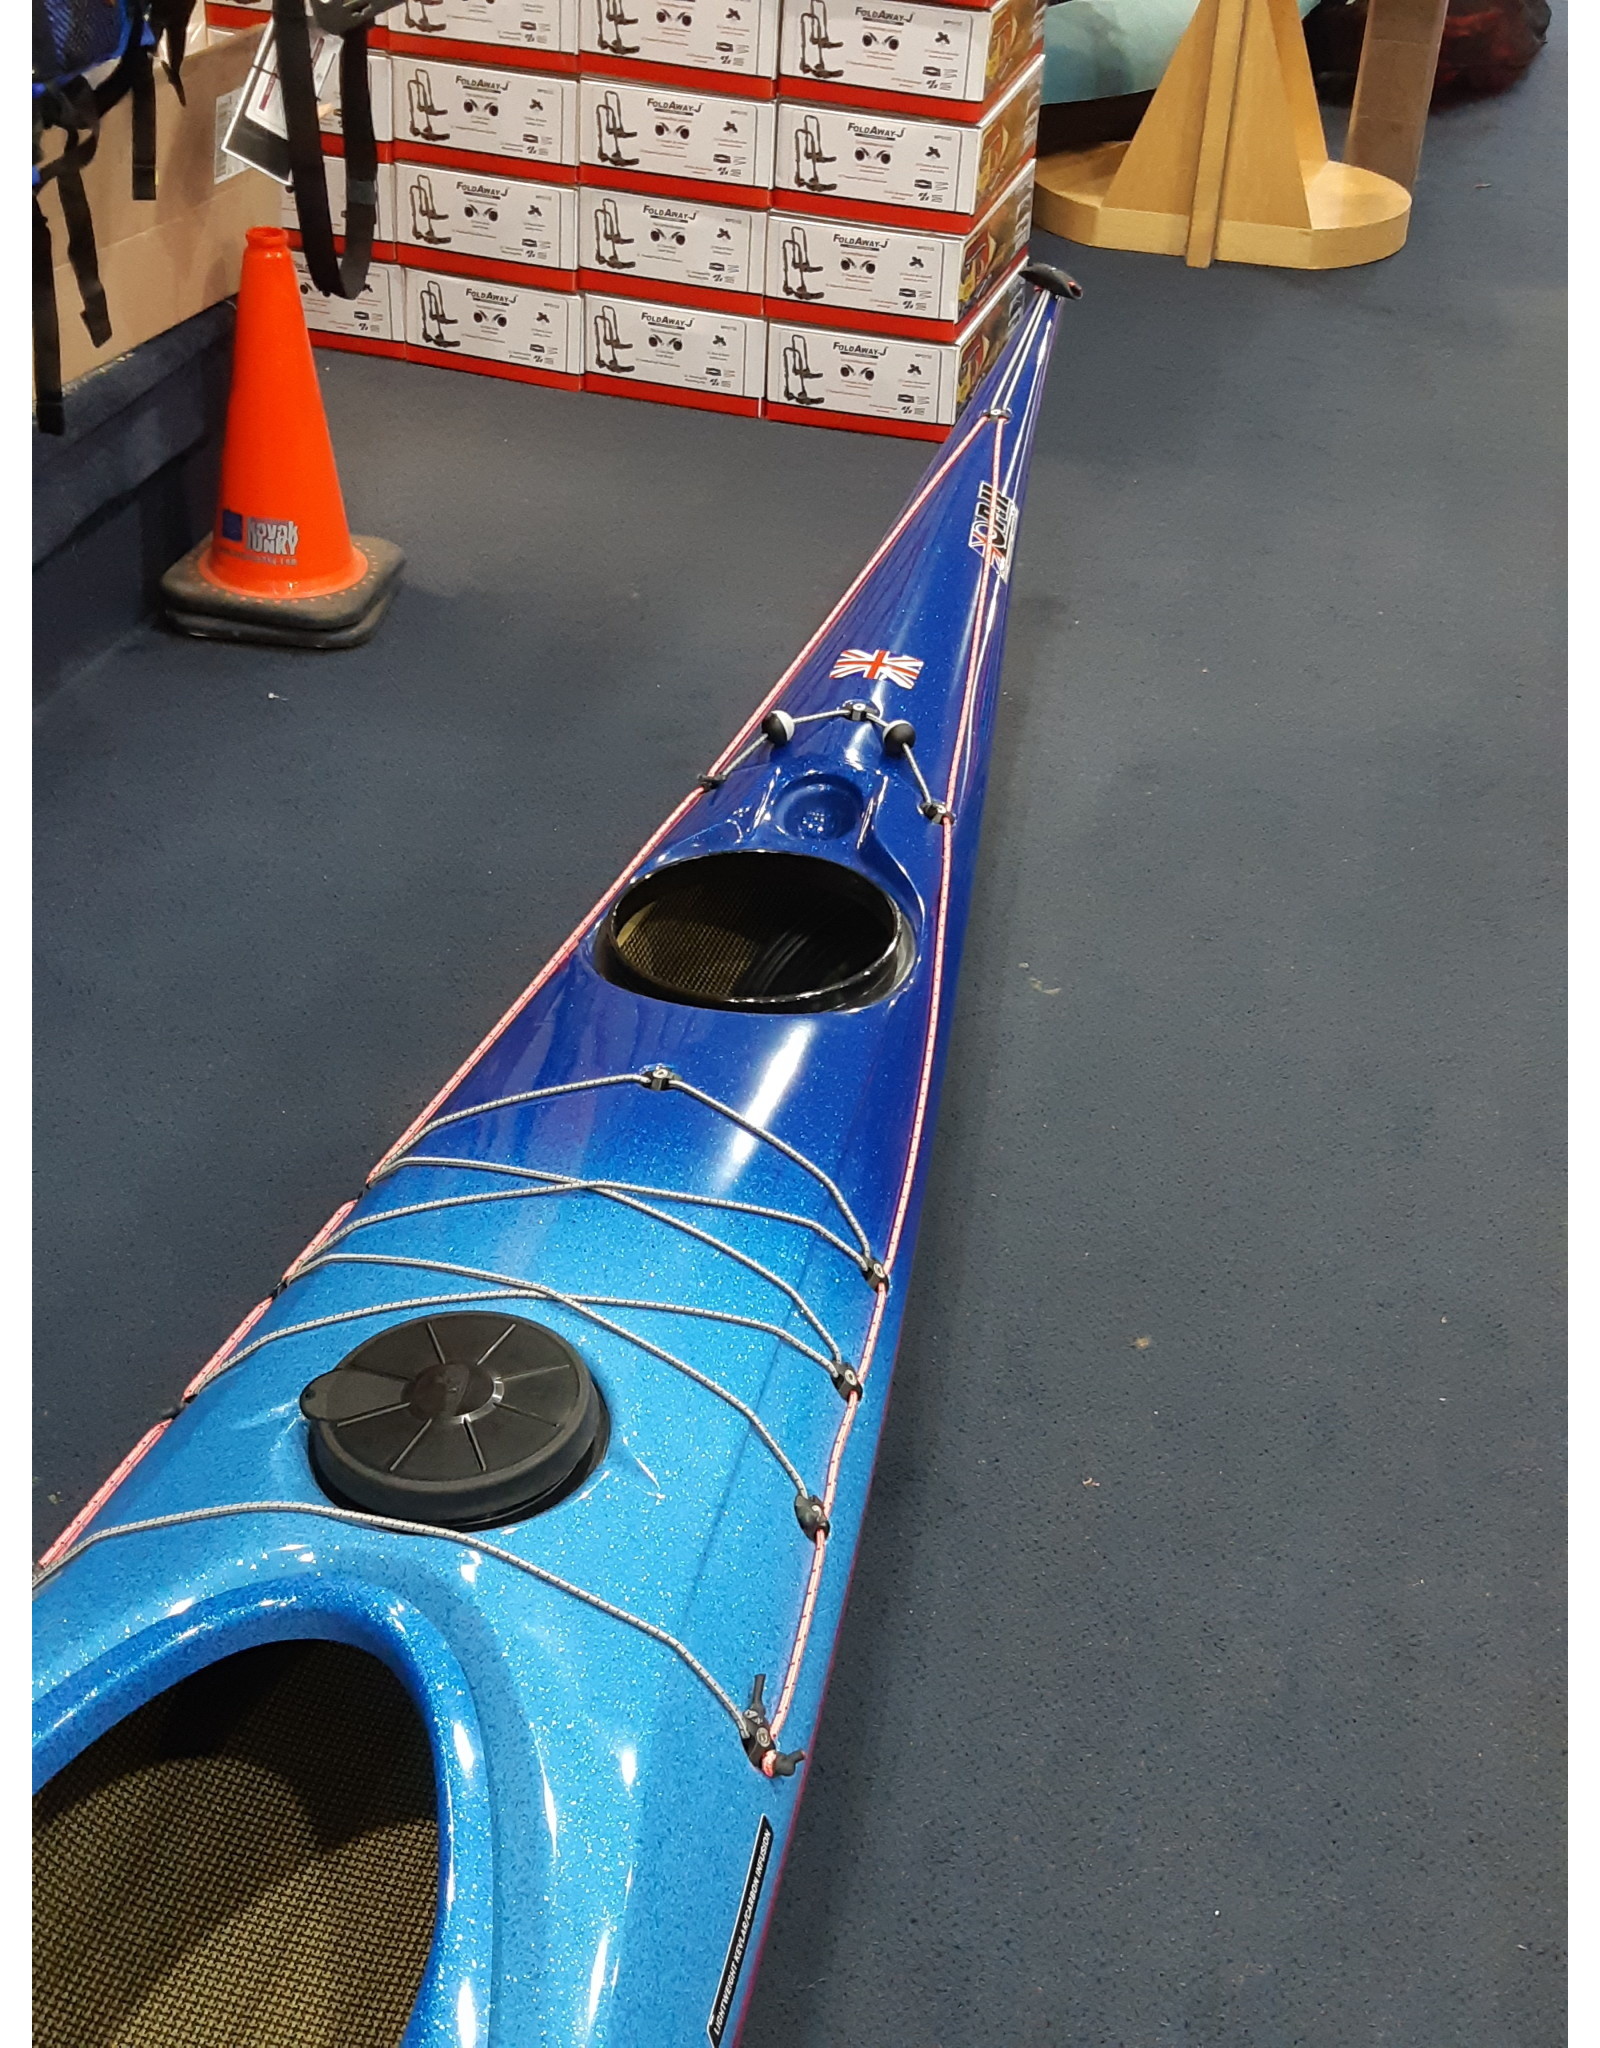 P&H Custom Sea Kayaks P&H kayak Cetus LV Lightweight Kevlar/Carbone Dégrader Métallique Bleu à Fushia/Blanc/Fushia